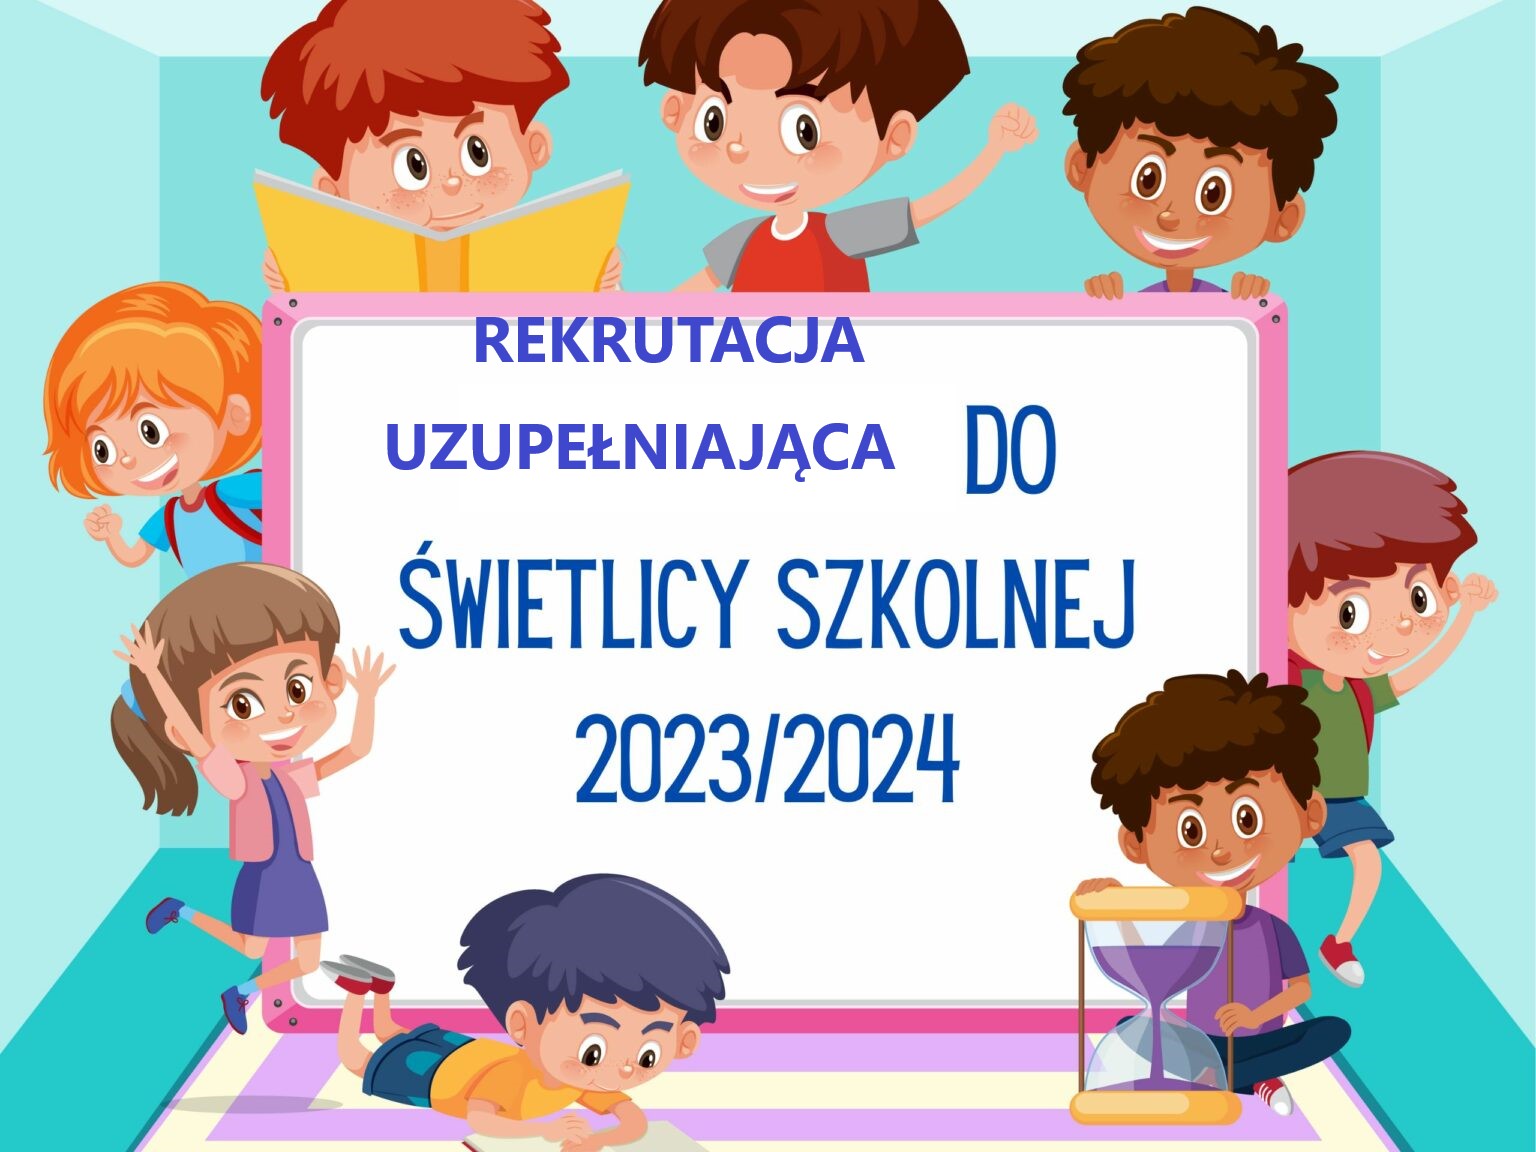 Ikona do artykułu: Rekrutacja uzupełniająca do świetlicy szkolnej w roku szkolnym 2023/2024.